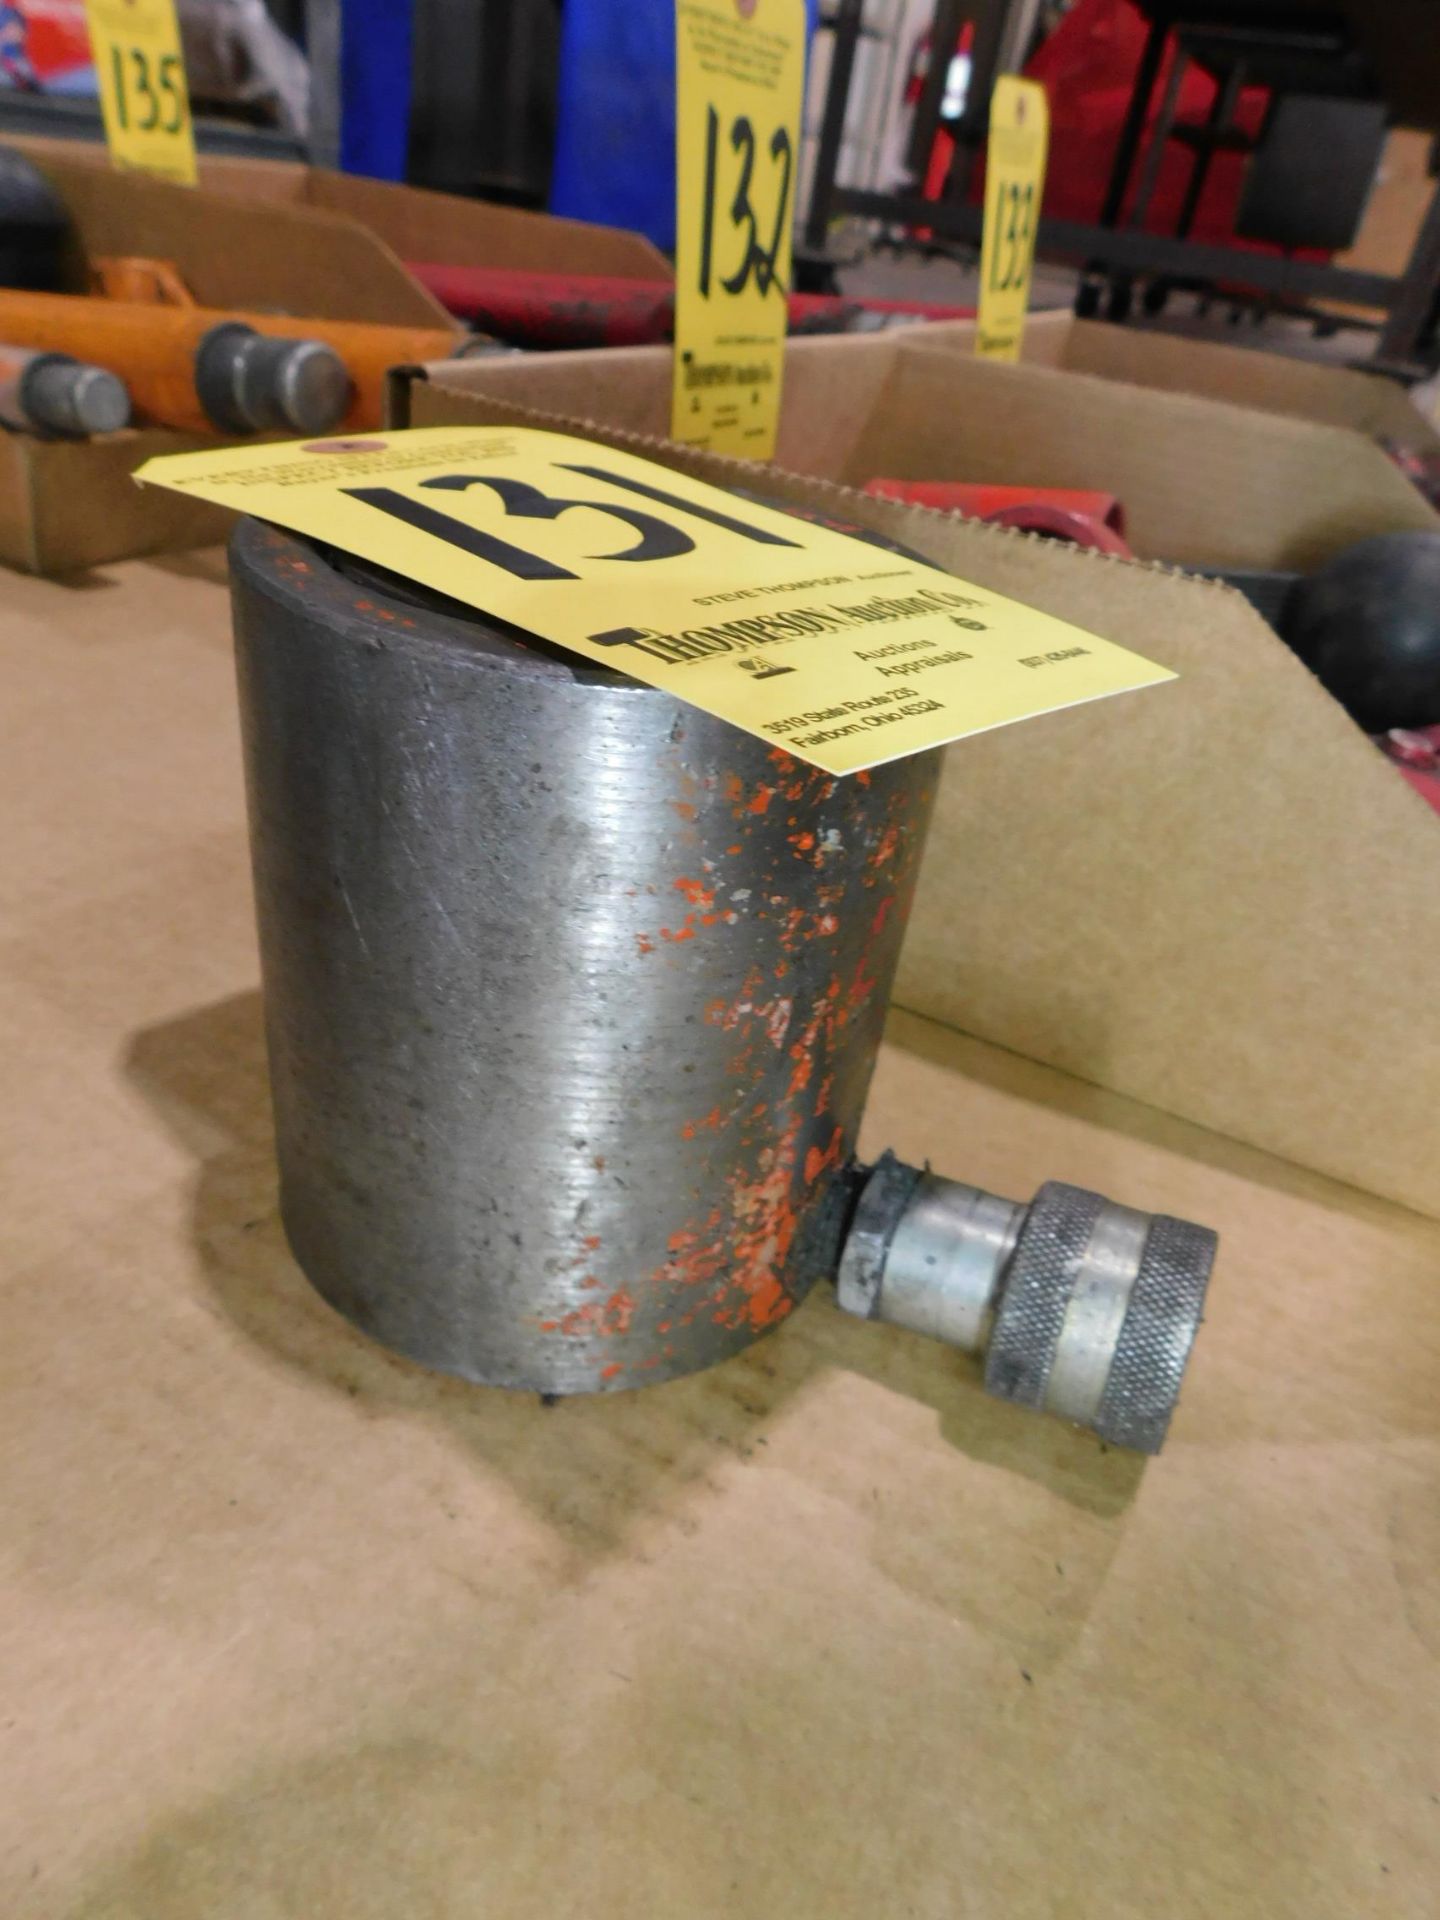 32.5 Ton Hydraulic Cylinder